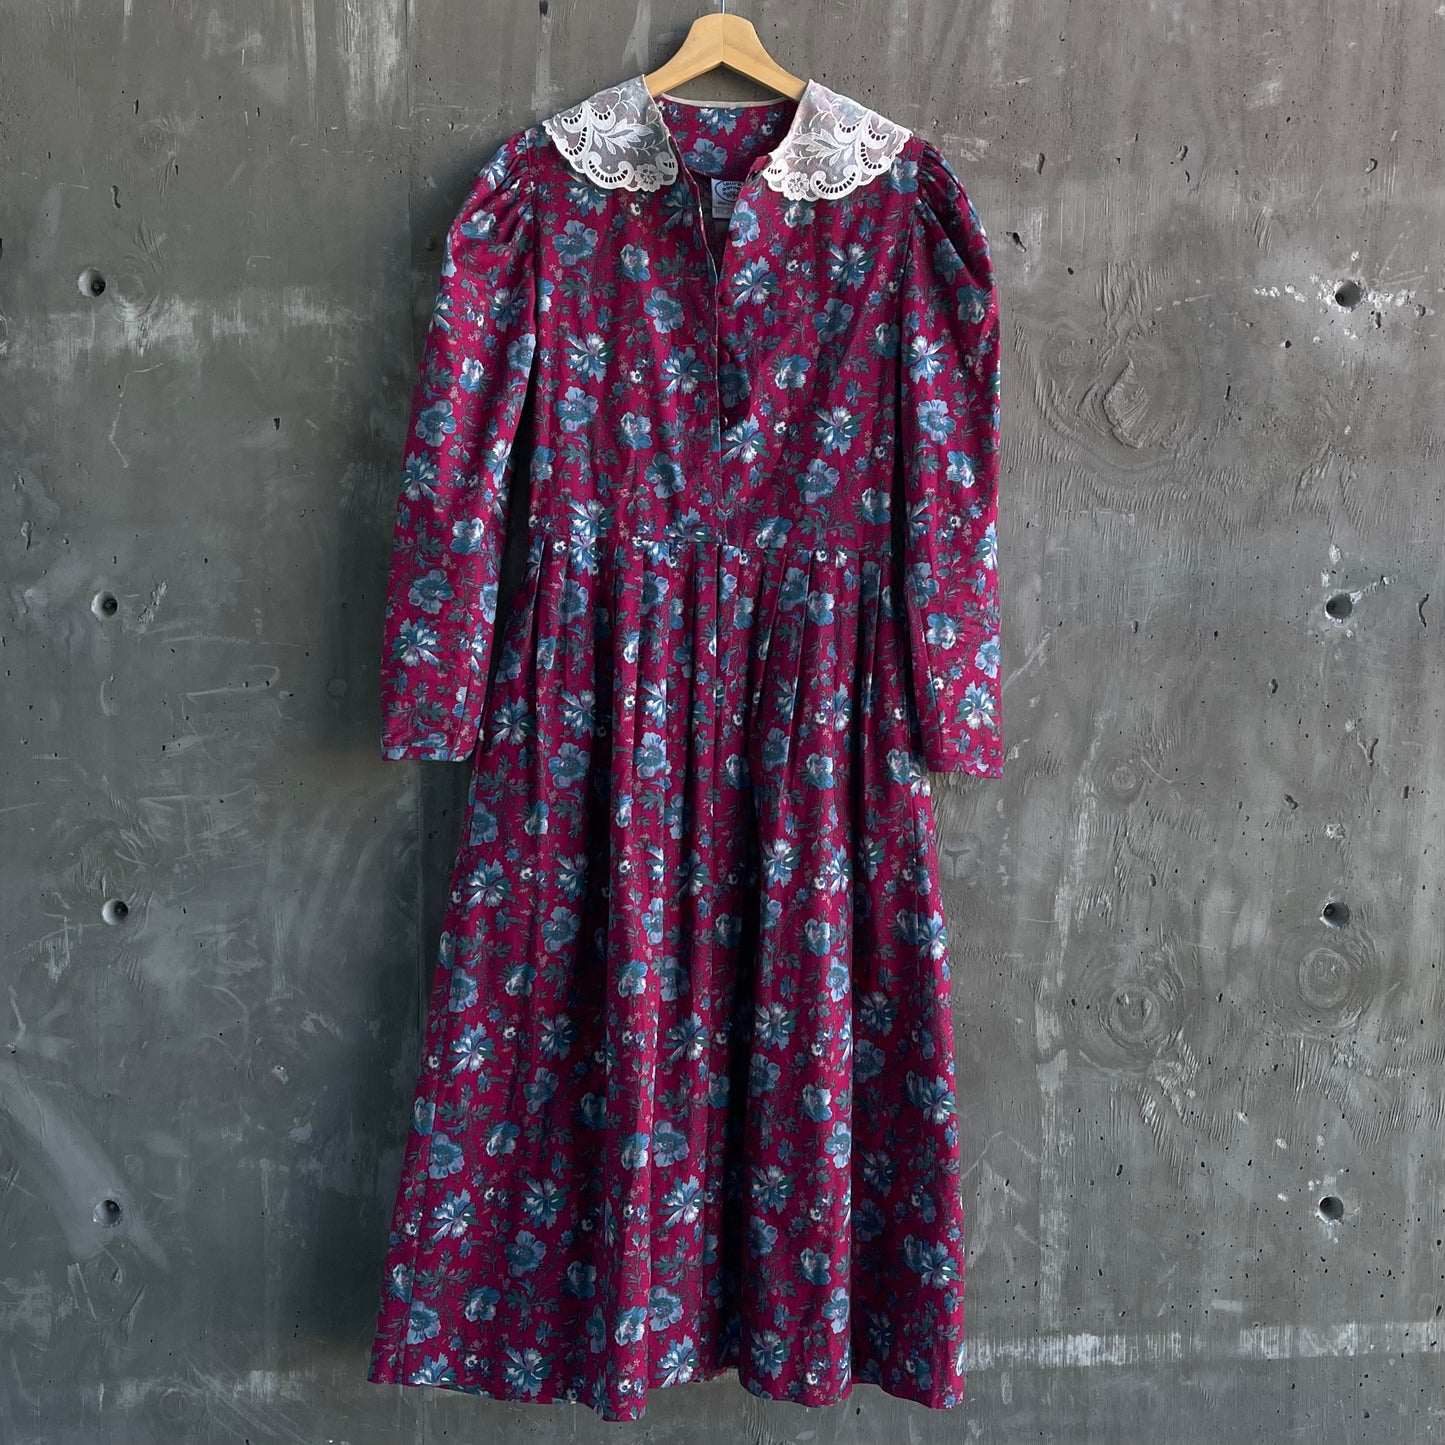 Vintage 70’s Laura Ashley Prairie Cottagecore Dress